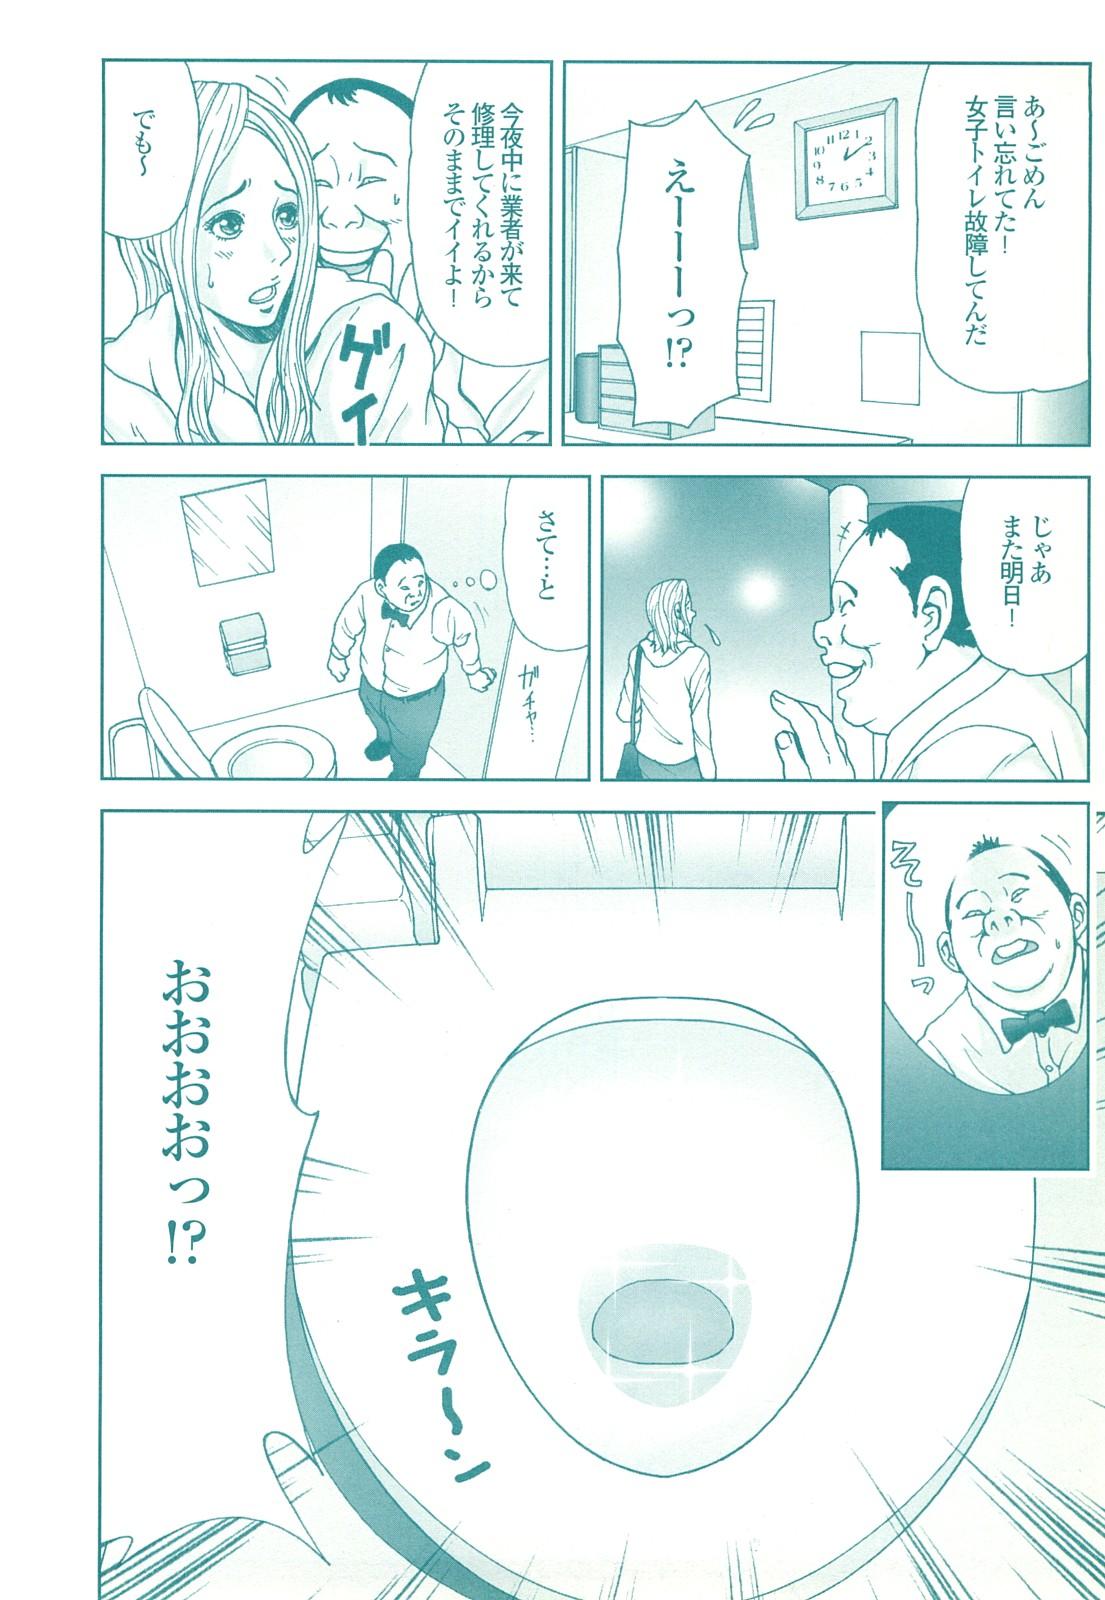 コミック裏モノJAPAN Vol.18 今井のりたつスペシャル号 189